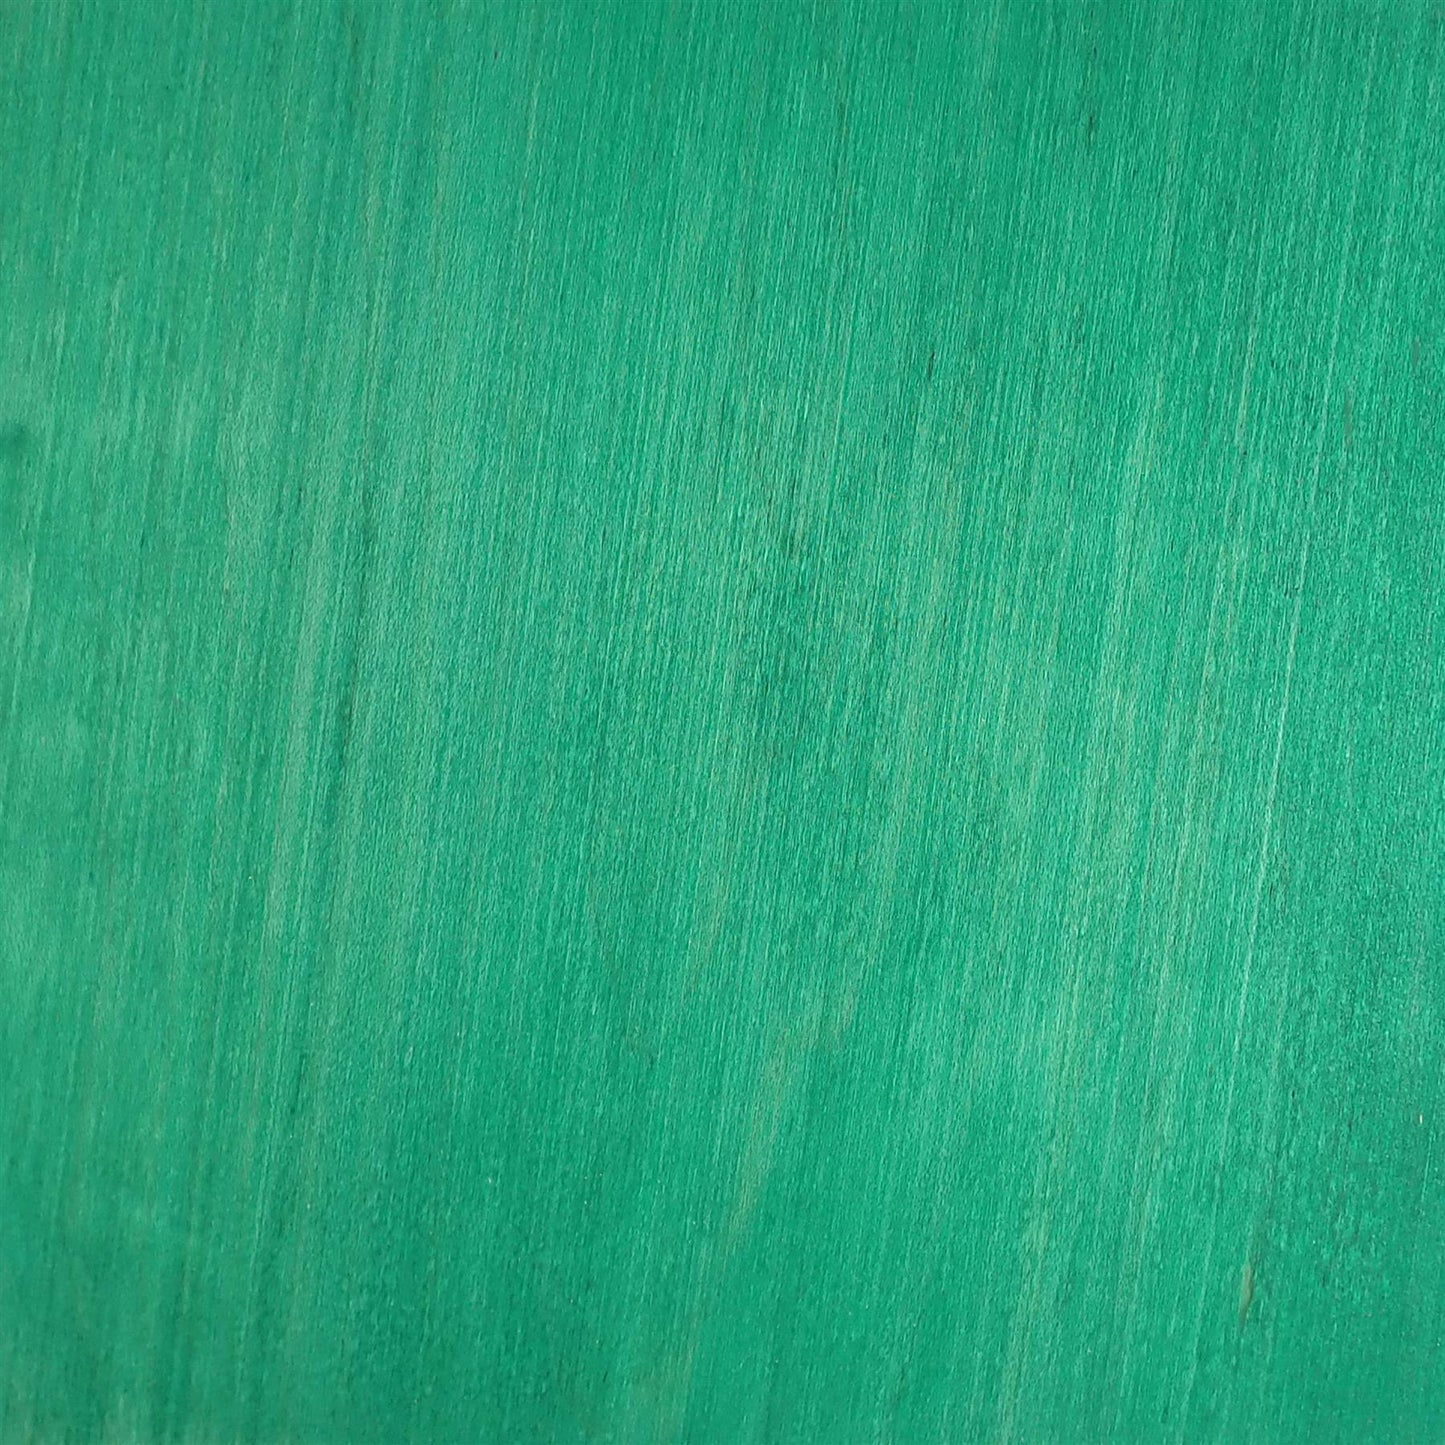 dartfords Forest Green Alcohol Soluble Aniline Wood Dye Powder - 28g 1Oz